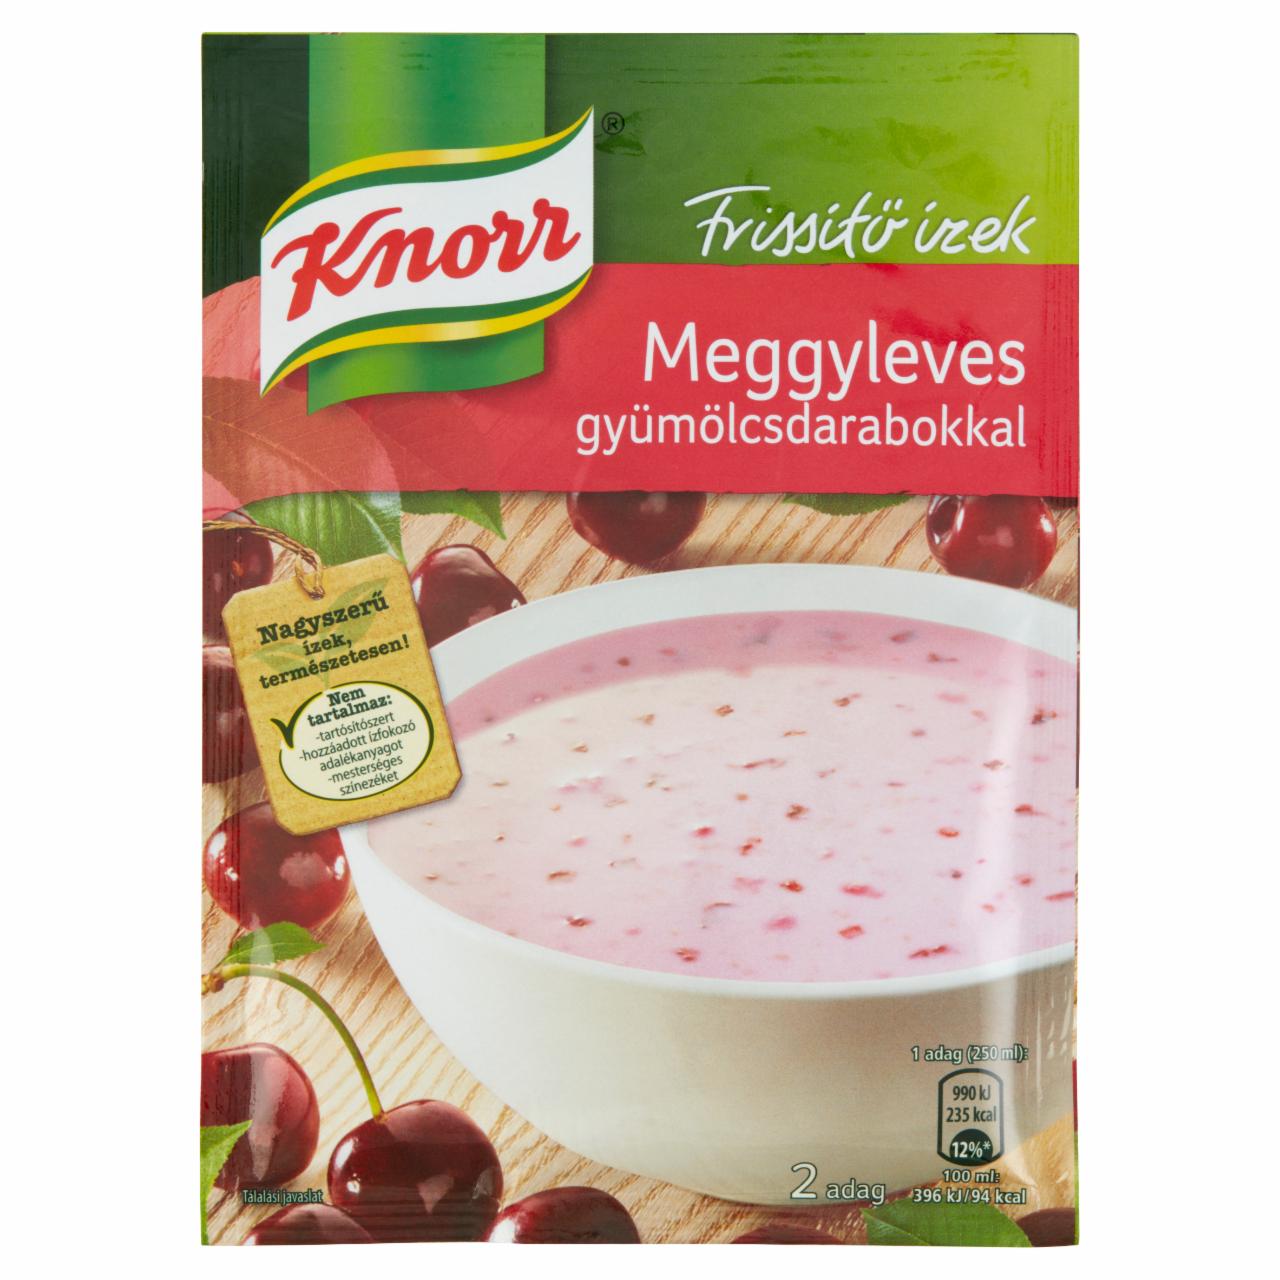 Képek - Knorr meggyleves gyümölcsdarabokkal 56 g